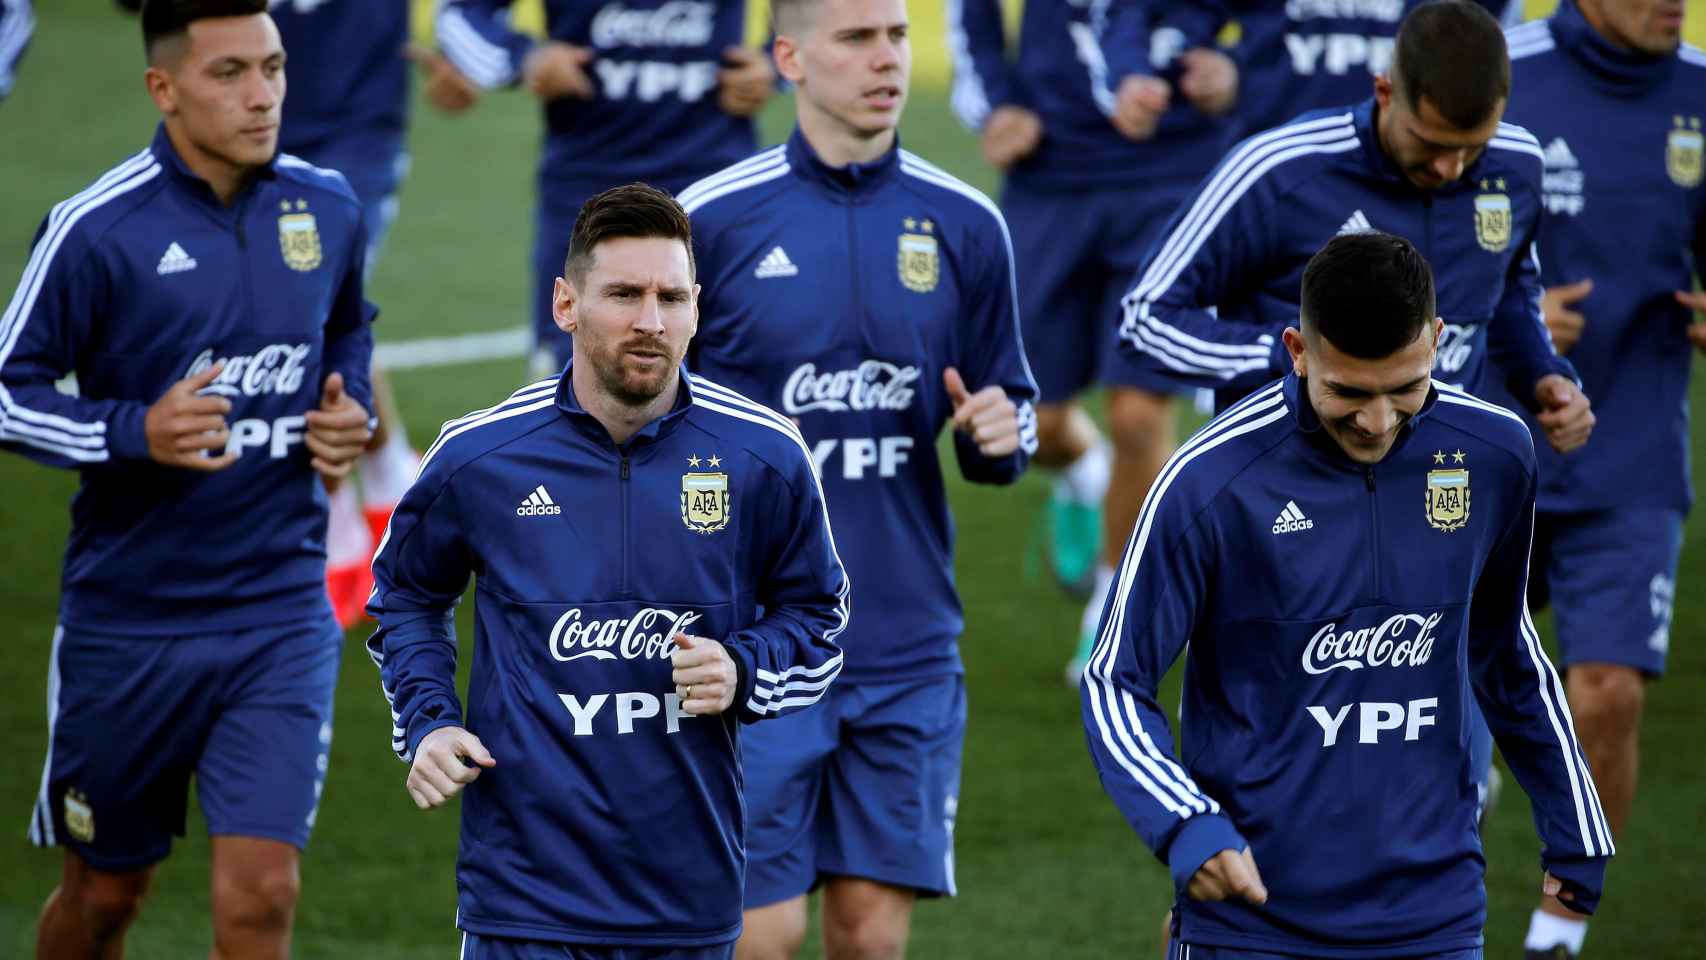 Messi vuelve a la selección argentina y se entrena en Valdebebas